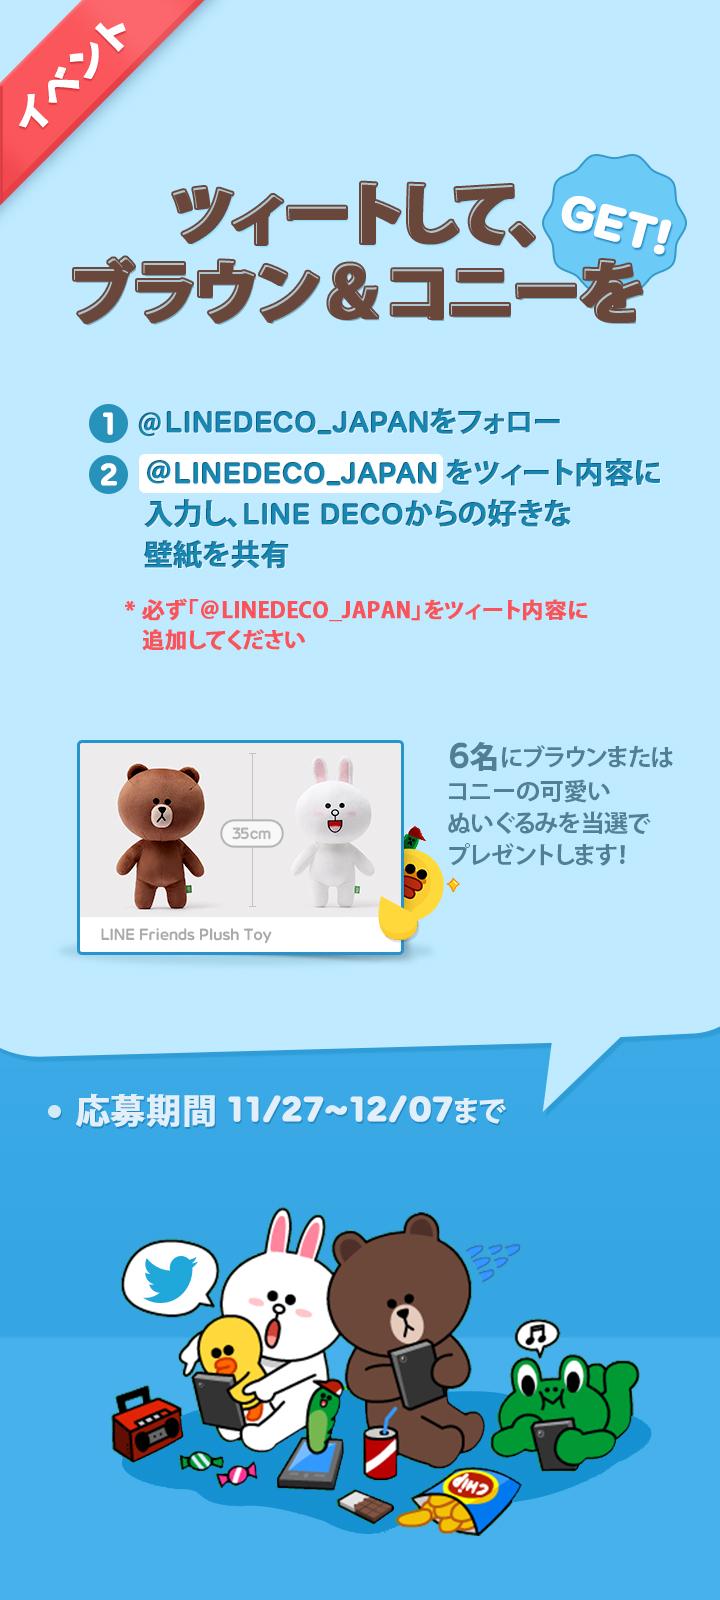 Uzivatel Line Deco公式アカウント Na Twitteru 残り4日 ツィートして ブラウン コニーをget 応募方法 フォロー 好きなラインデコ壁紙を共有 抽選で6名様がブラウンかコニーの可愛いぬいぐるみをもらえます Linedeco Japanも必ず入力 詳細は画像を見てね